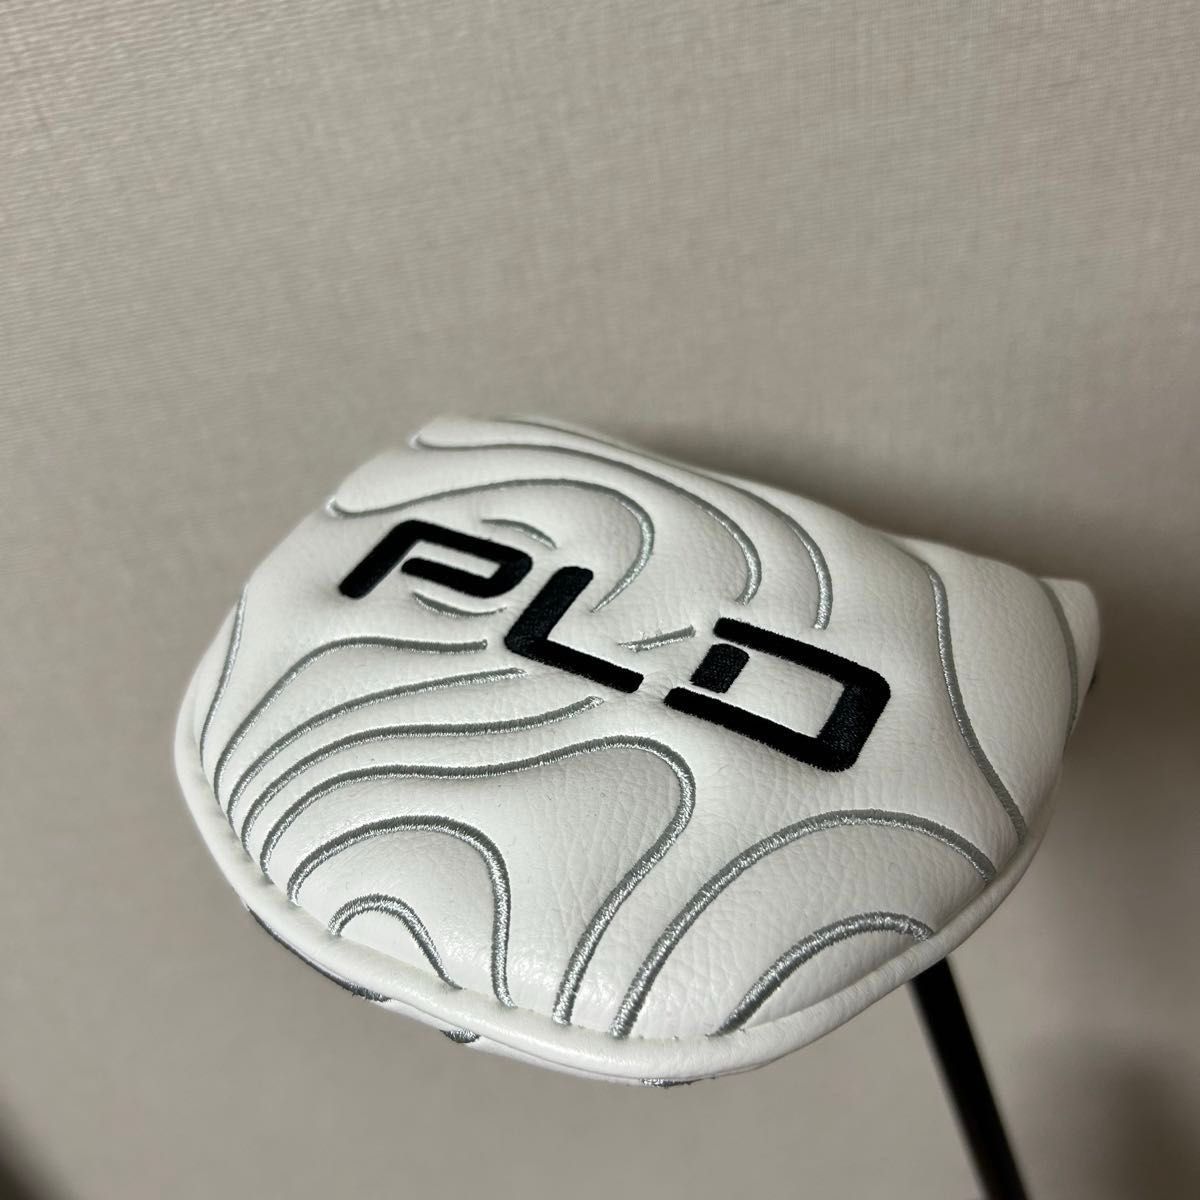 最終価格【新品】ピン PING PLD OSLO3 オスロ3 最新 2024モデル 34インチ ティレル・ハットン選手使用モデル